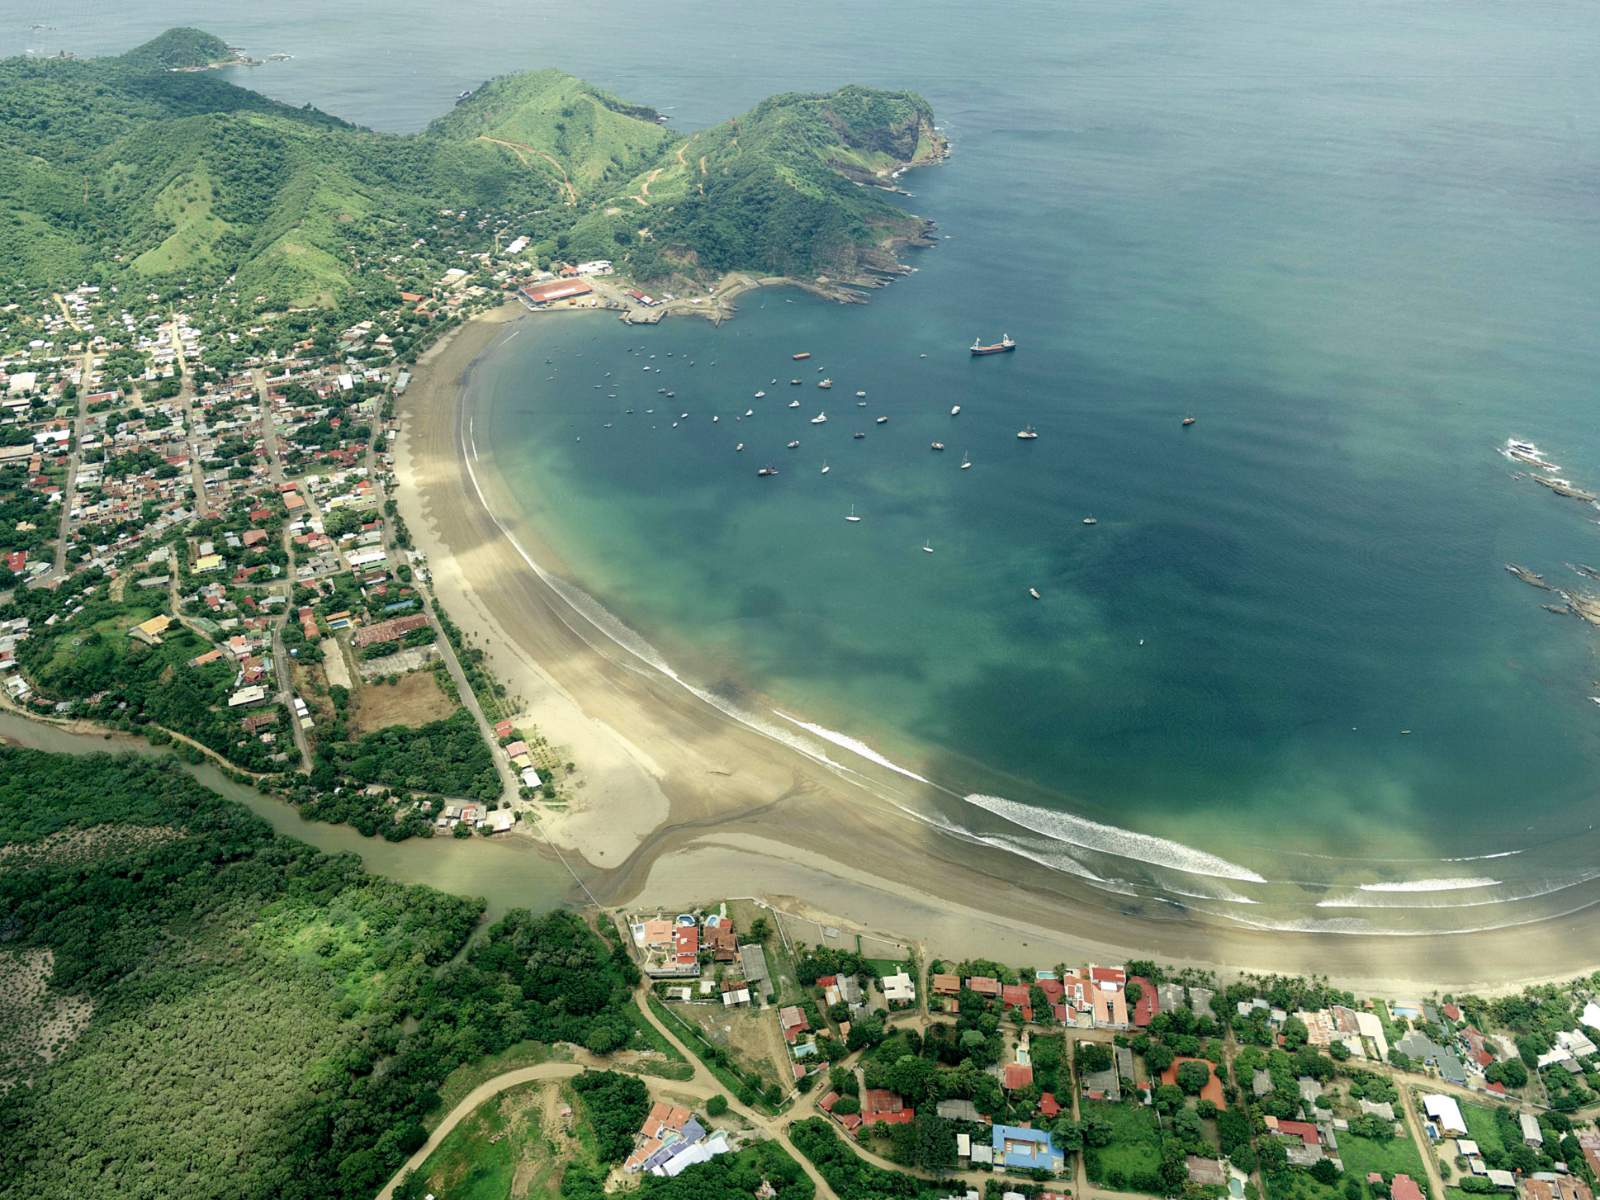 Beach and nature in San Juan del Sur